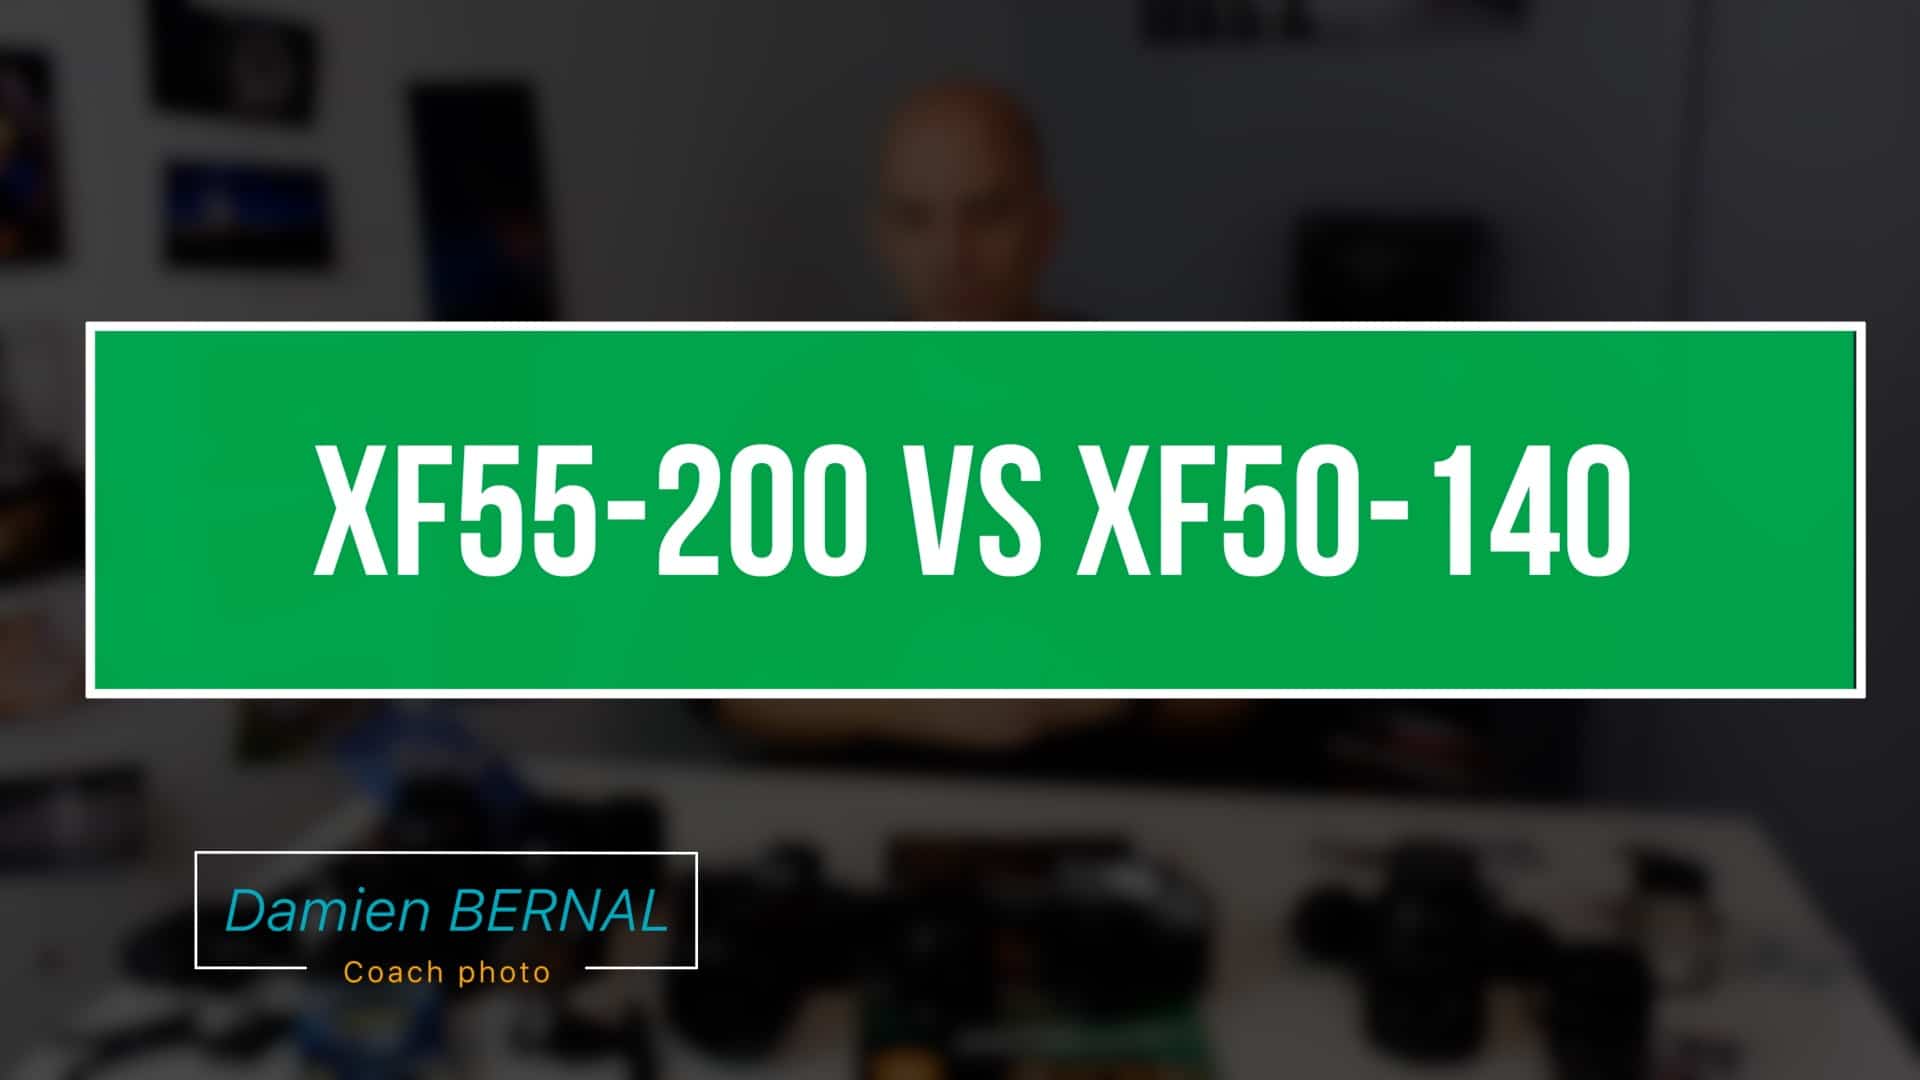 XF55-200 vs XF50-140